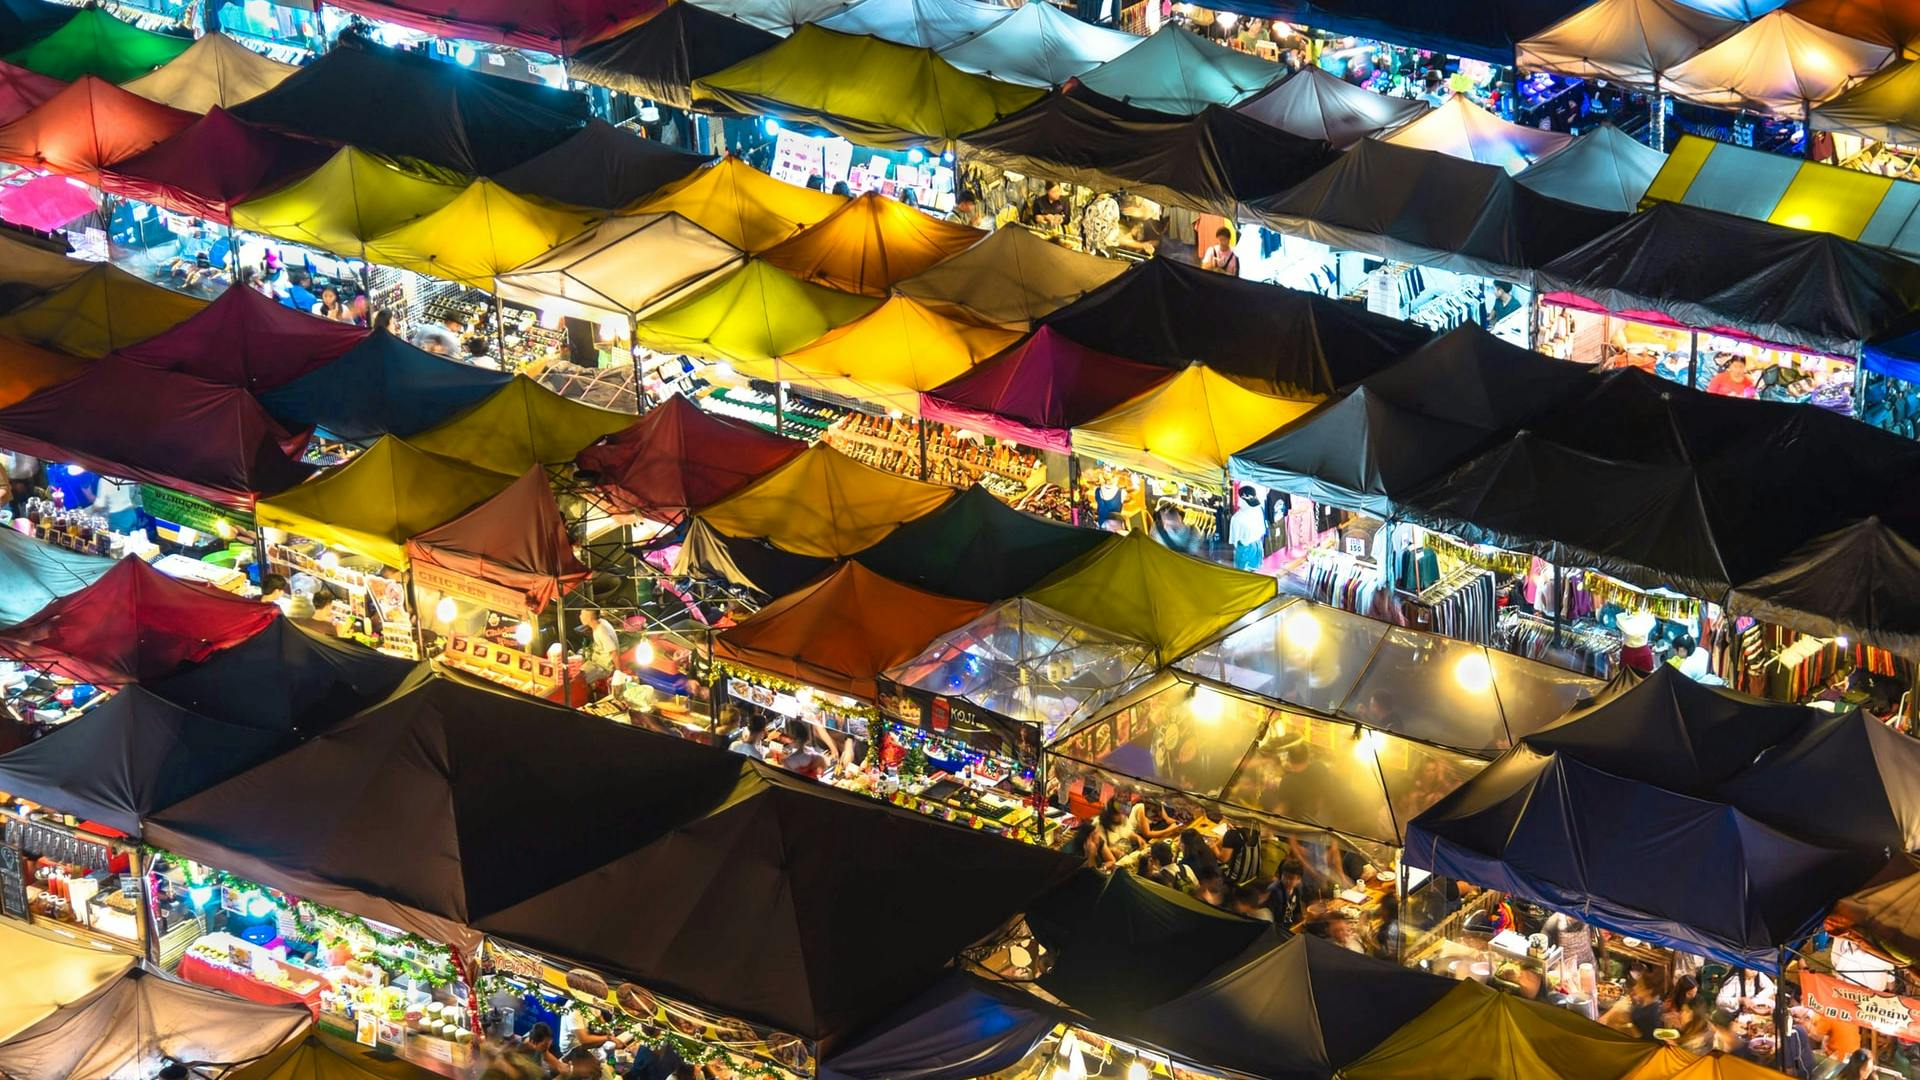 Thai night market